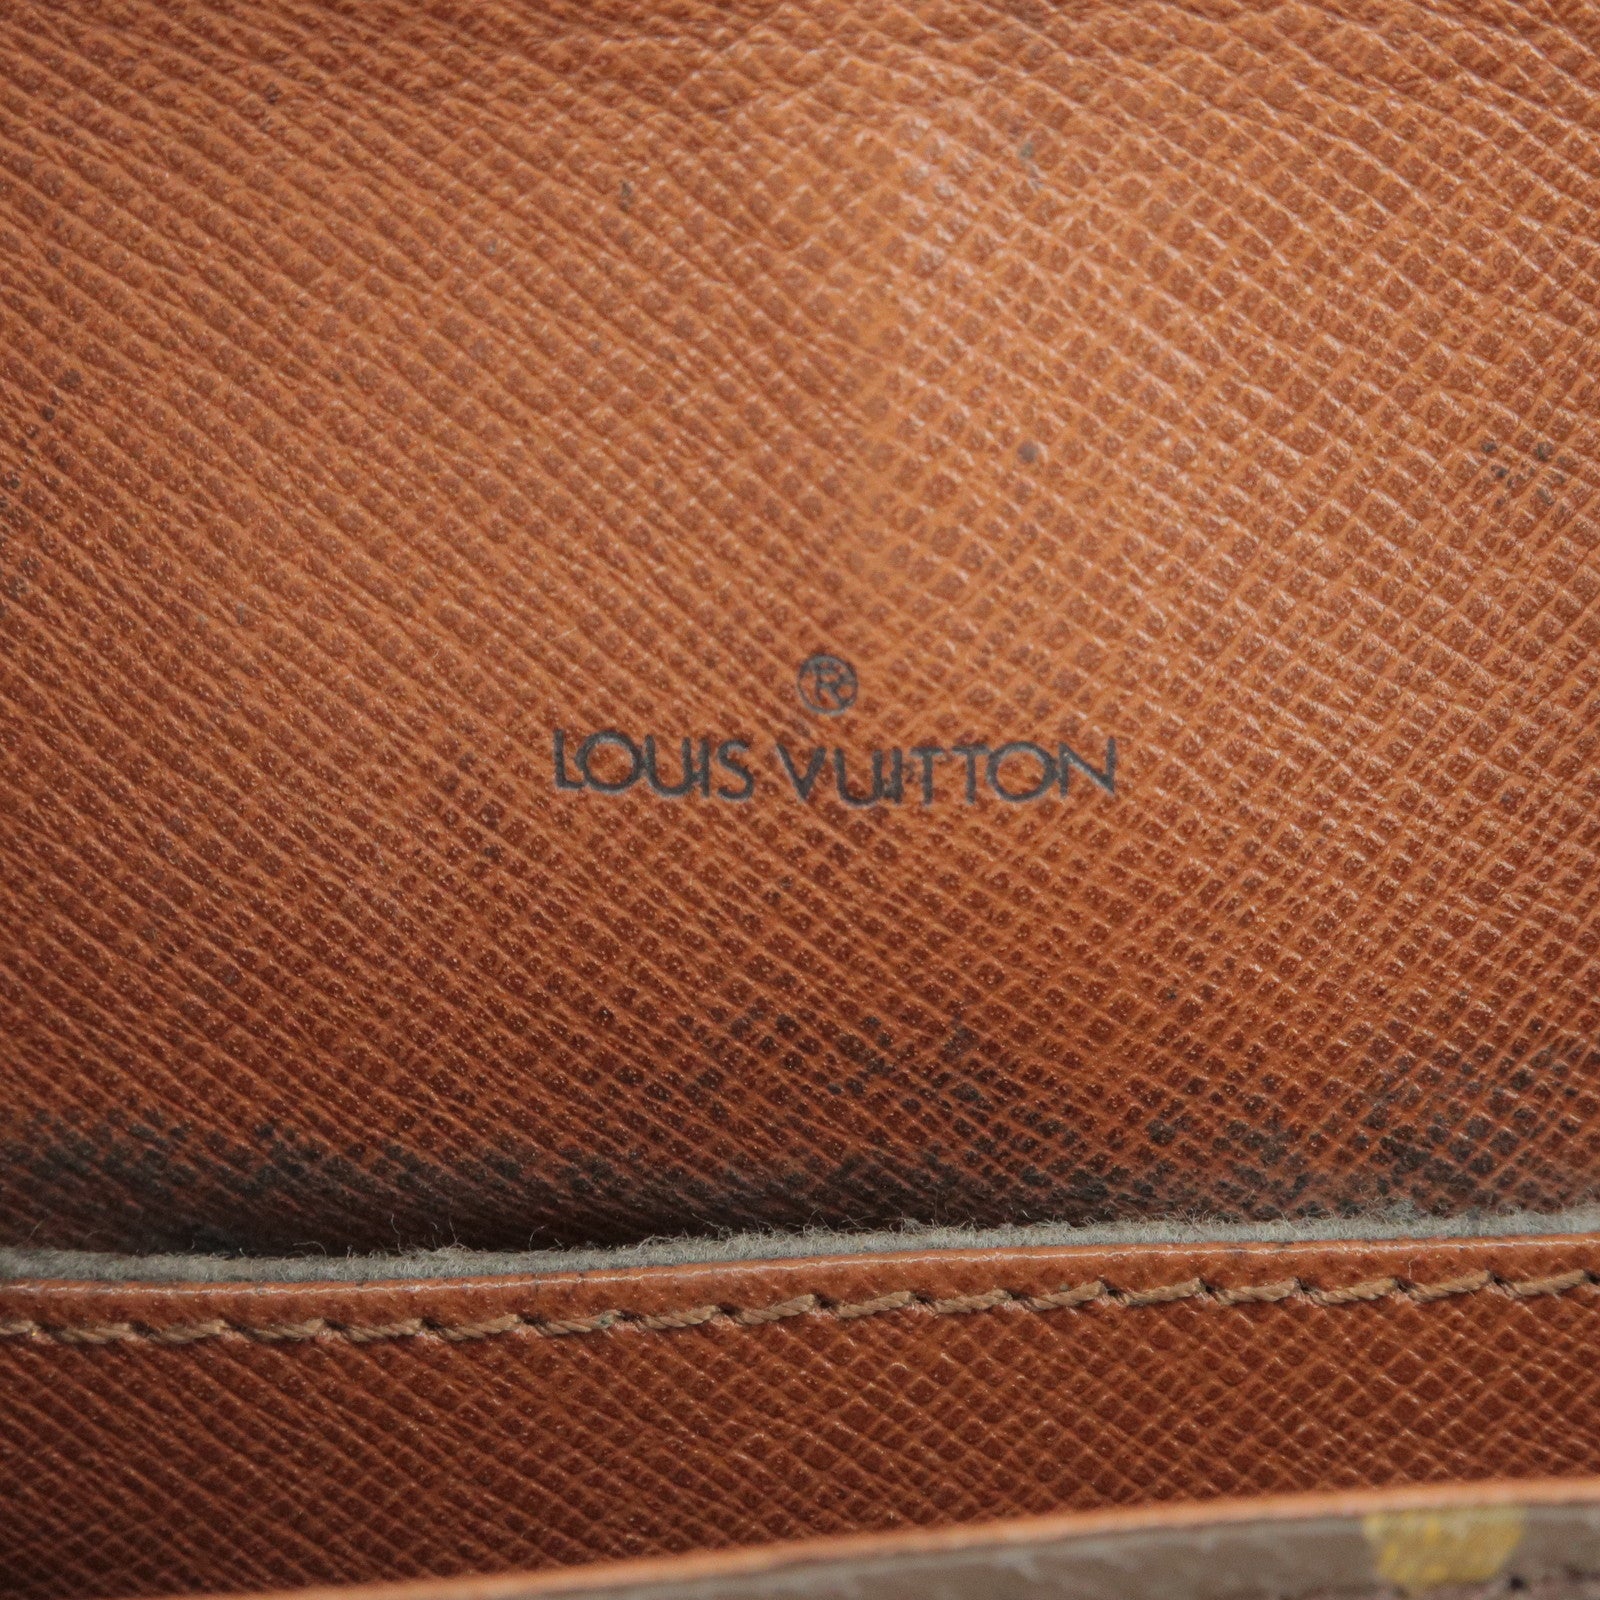 Louis Vuitton - Saint cloud PM Shoulder bag in France